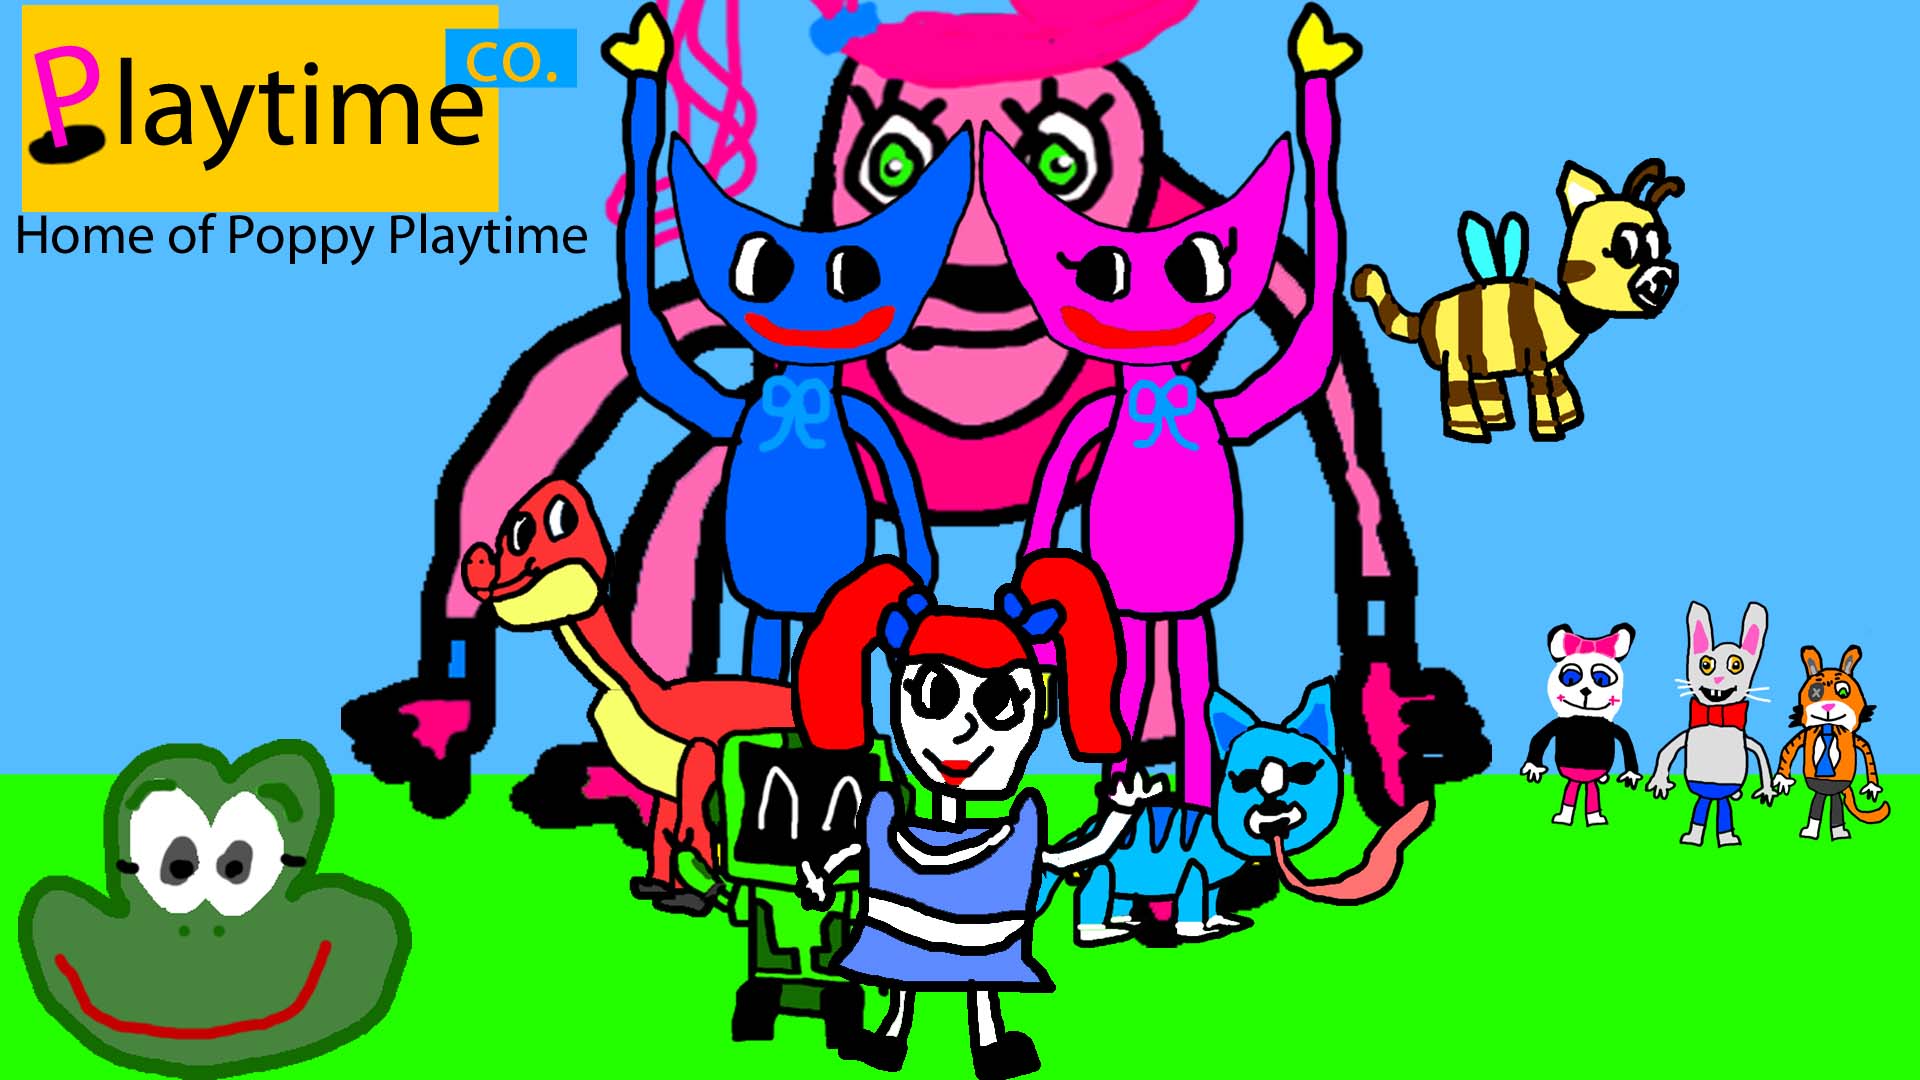 Poppy Playtime Logo by MrZaga64 on DeviantArt